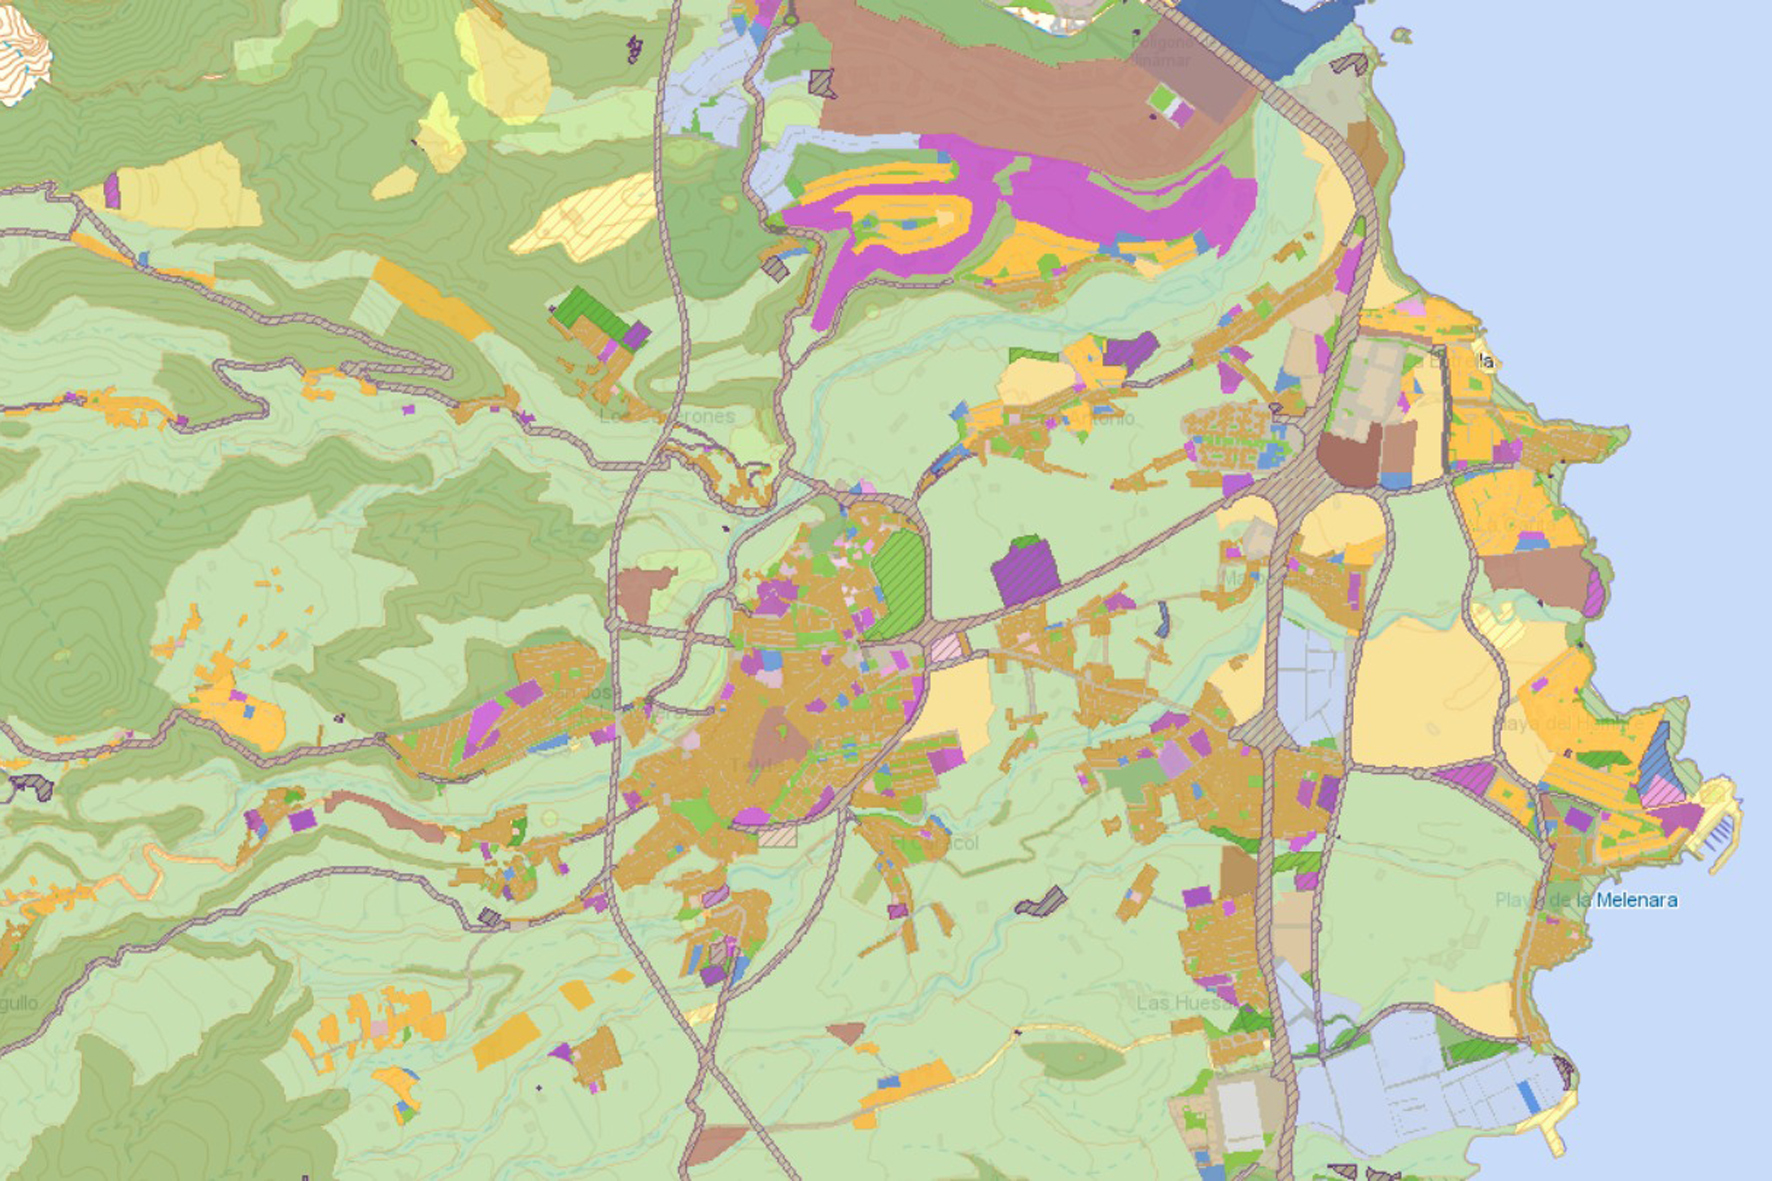 GRAFCAN actualiza la base de datos geográfica de planeamiento en Canarias he incorpora los suelos rústicos de la isla de El Hierro